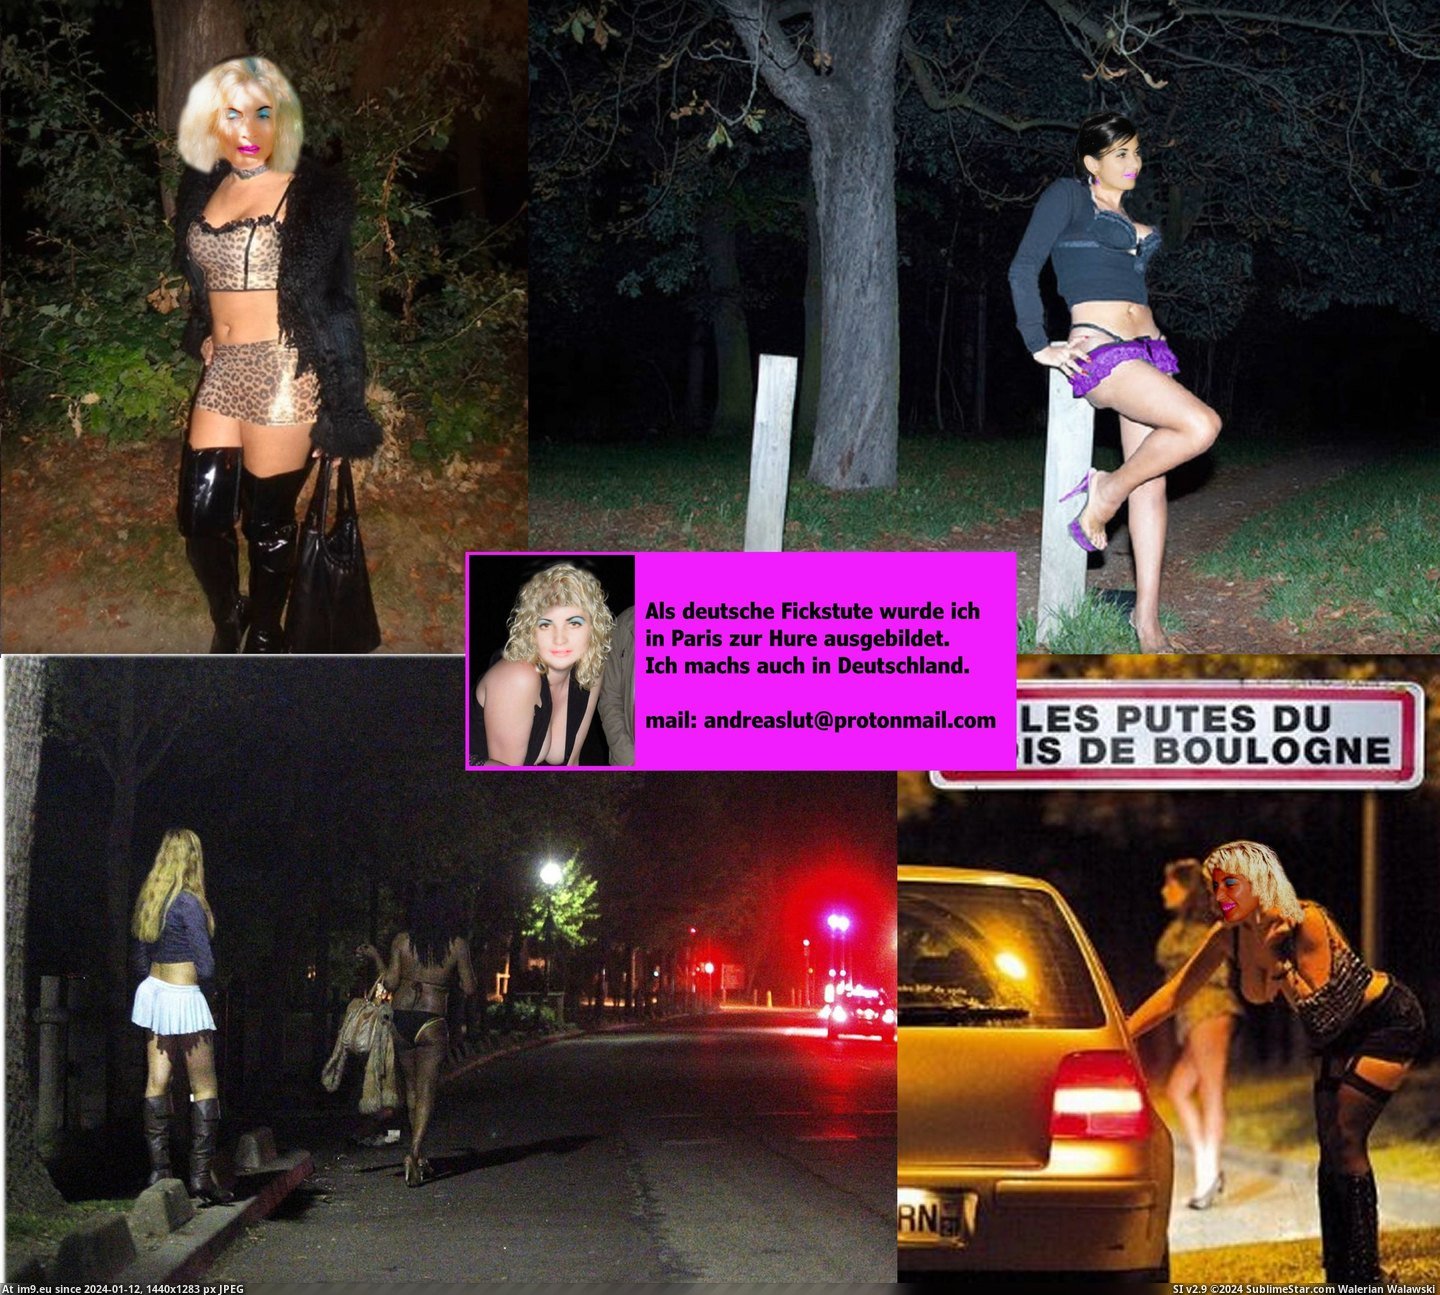 #Slut #Whore #Fotze #Prostituee #Webwhore #Nutte #Pute #Andrea #Strich #Hure #Putain Andrea Bois de Boulogne putes.2jpg Pic. (Изображение из альбом Instant Upload))